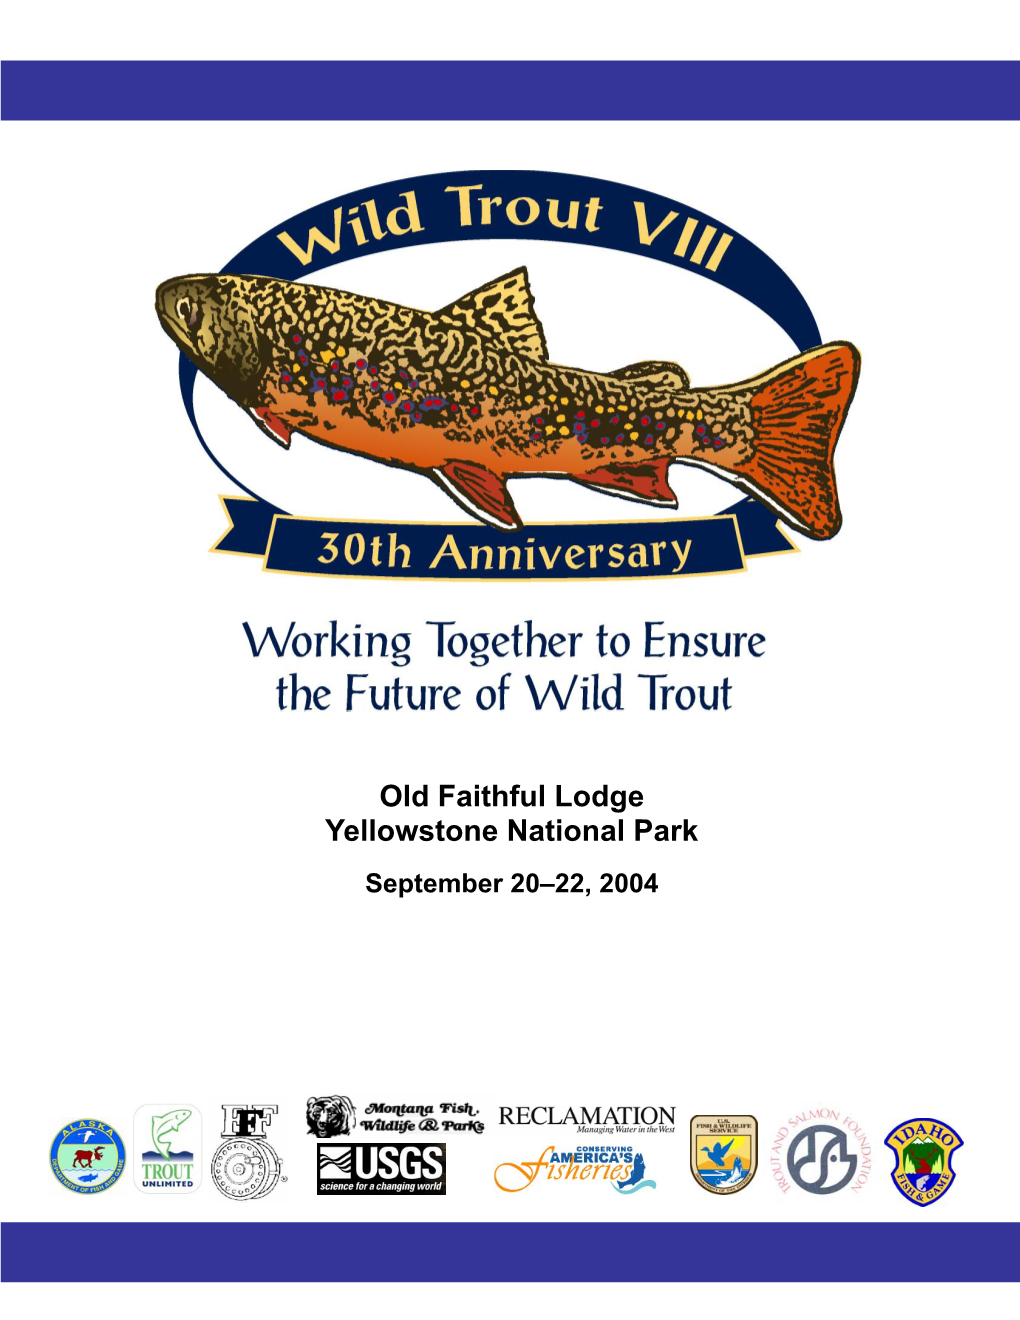 Wild Trout VIII 2004